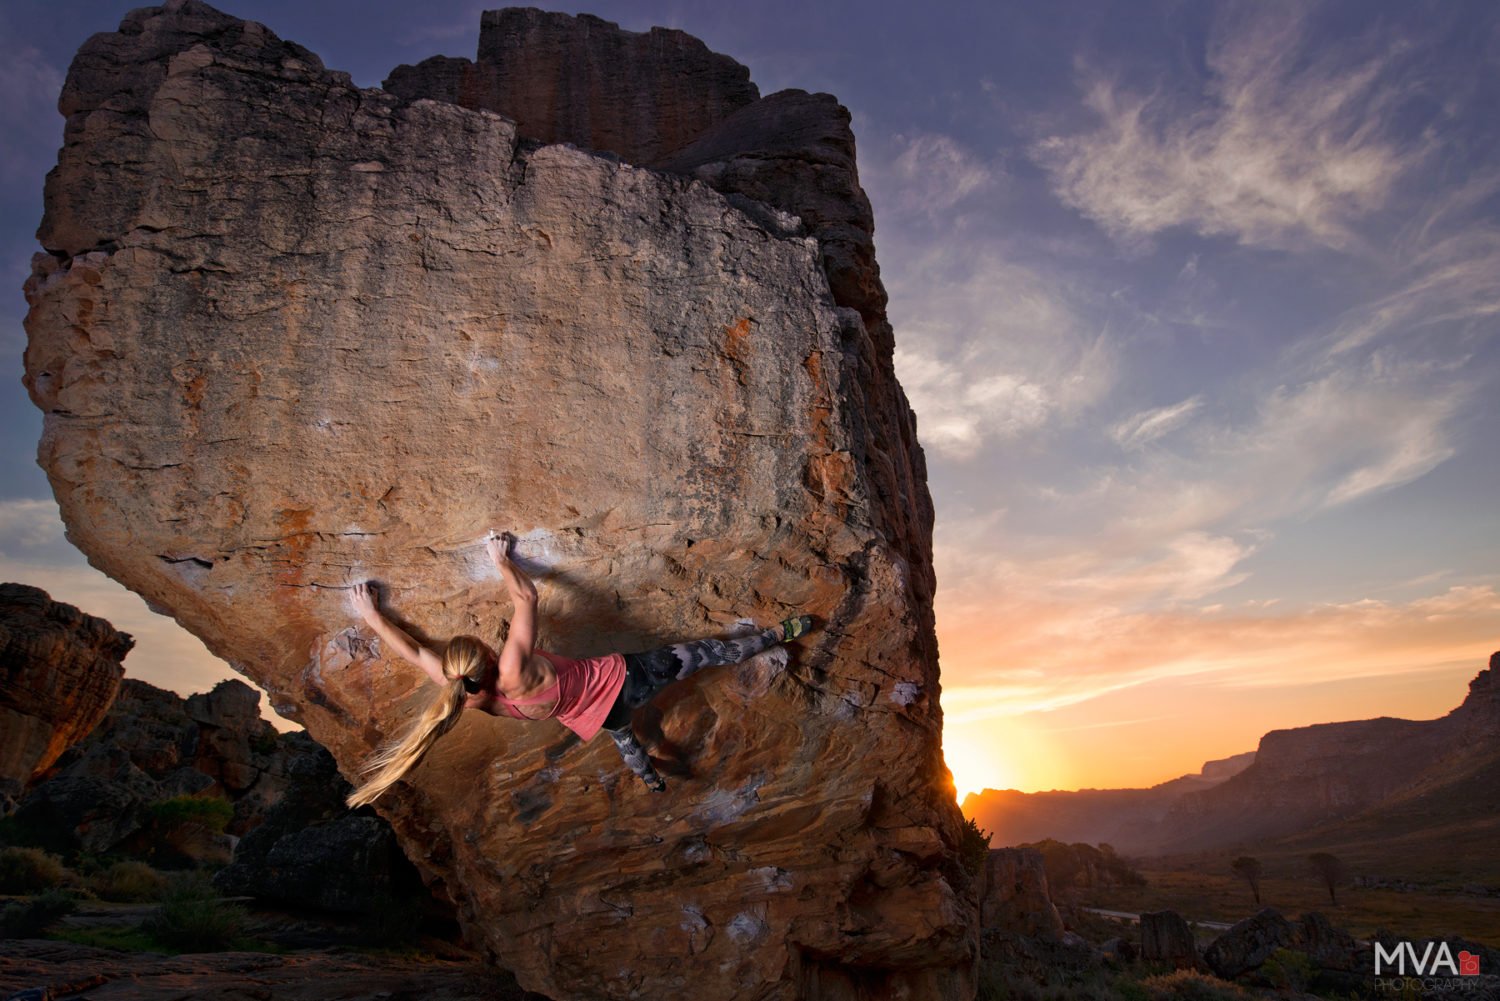 Rock climbing photography tips with Michelle van Aswegen